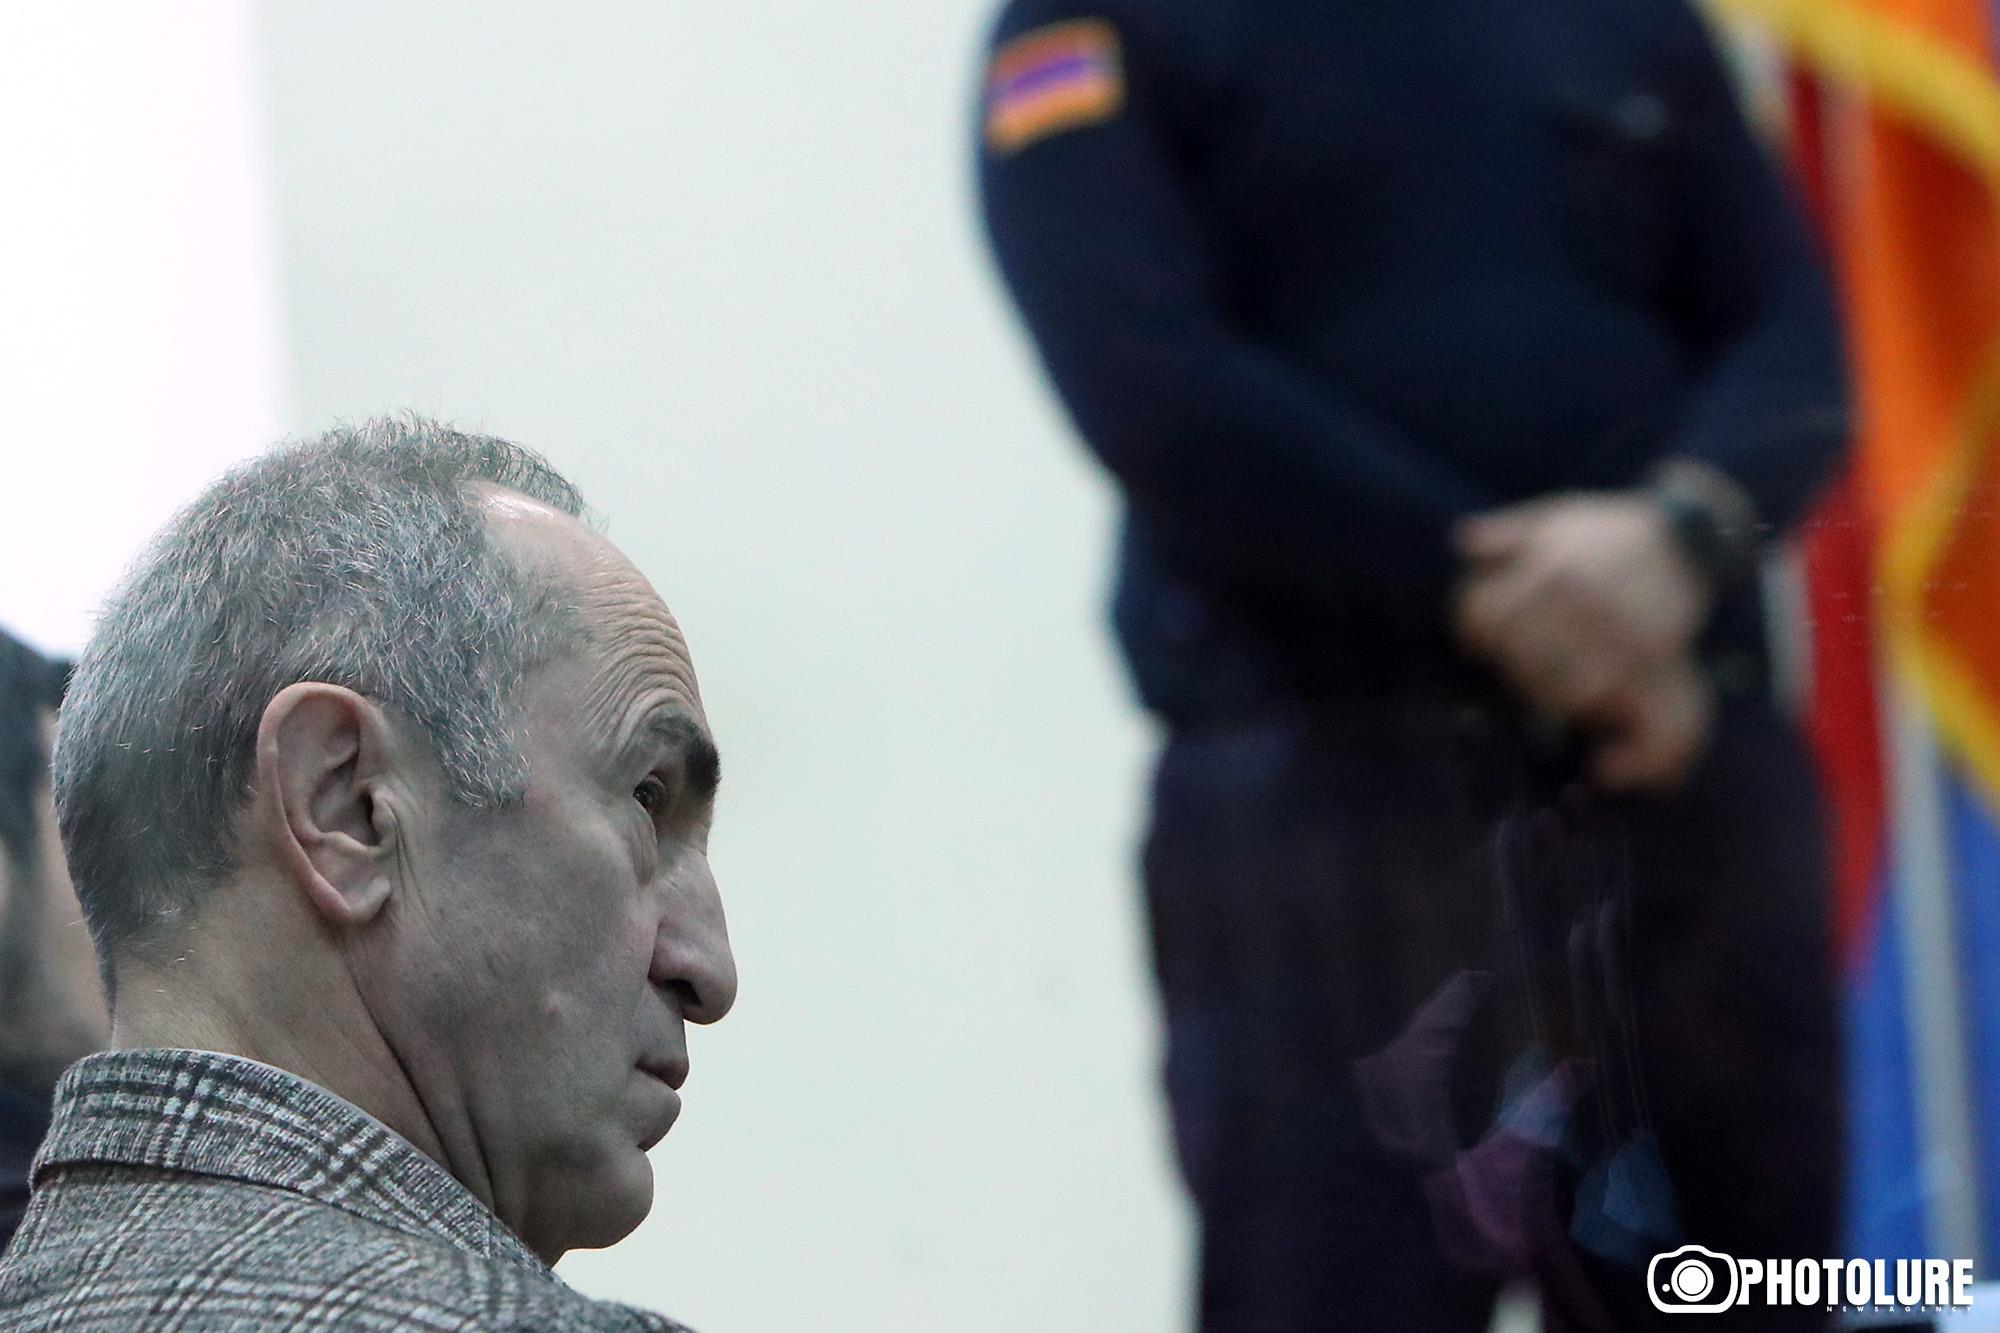 Դատավոր Դանիբեկյանը թույլատրել է Քոչարյանին փետրվարի 3-8-ը բացակայել Հայաստանից